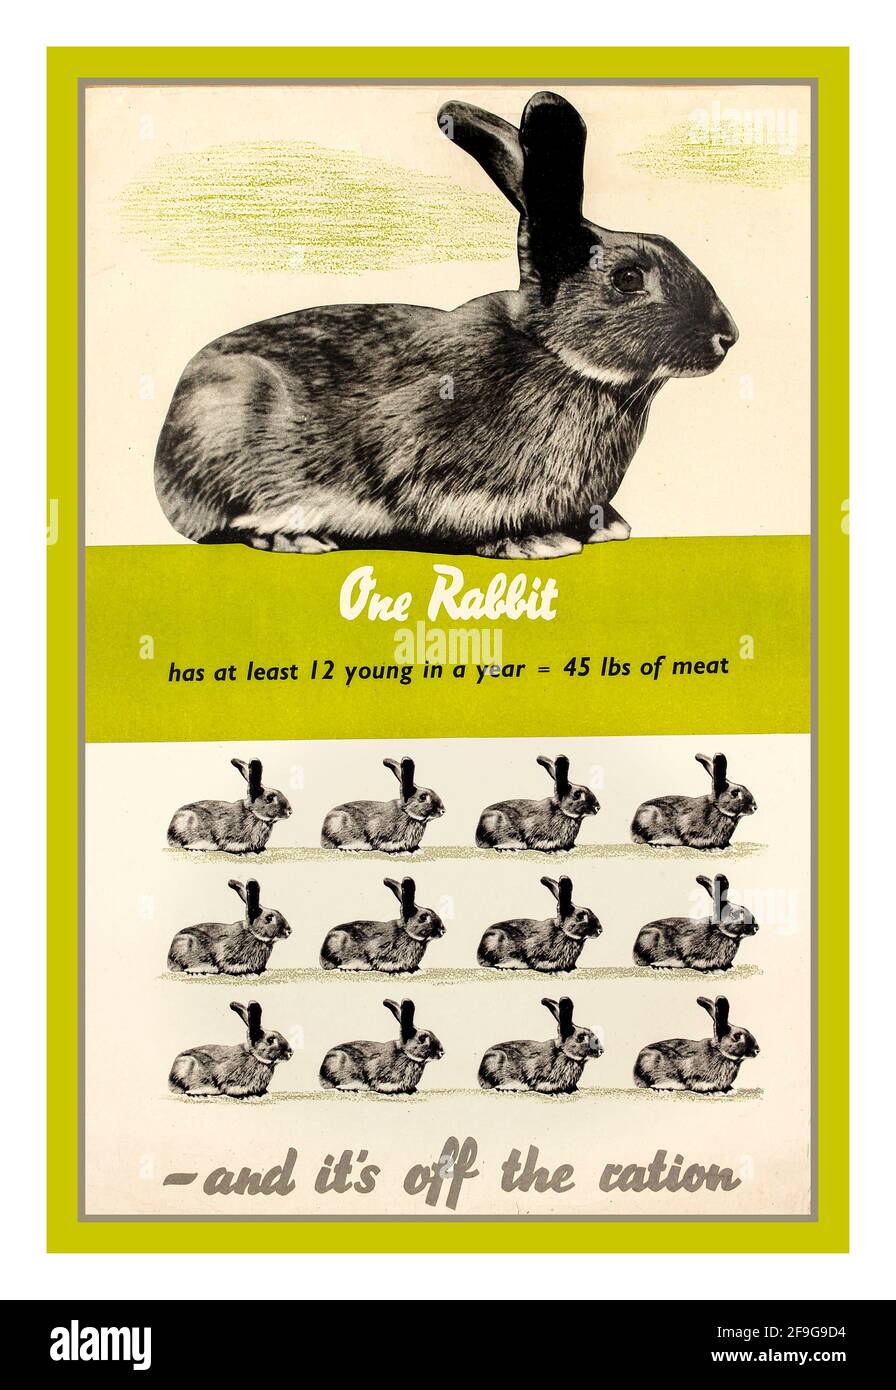 Britischer Propaganda-Plakat zur Rationierung von Lebensmitteln aus dem 2. Weltkrieg in Großbritannien: „One Rabbit and it's off the ration“. ' hat mindestens 12 Junge in einem Jahr 45 Pfund Fleisch' Land: Großbritannien. Jahr: 1940er-Jahre-zweiter Weltkrieg Stockfoto